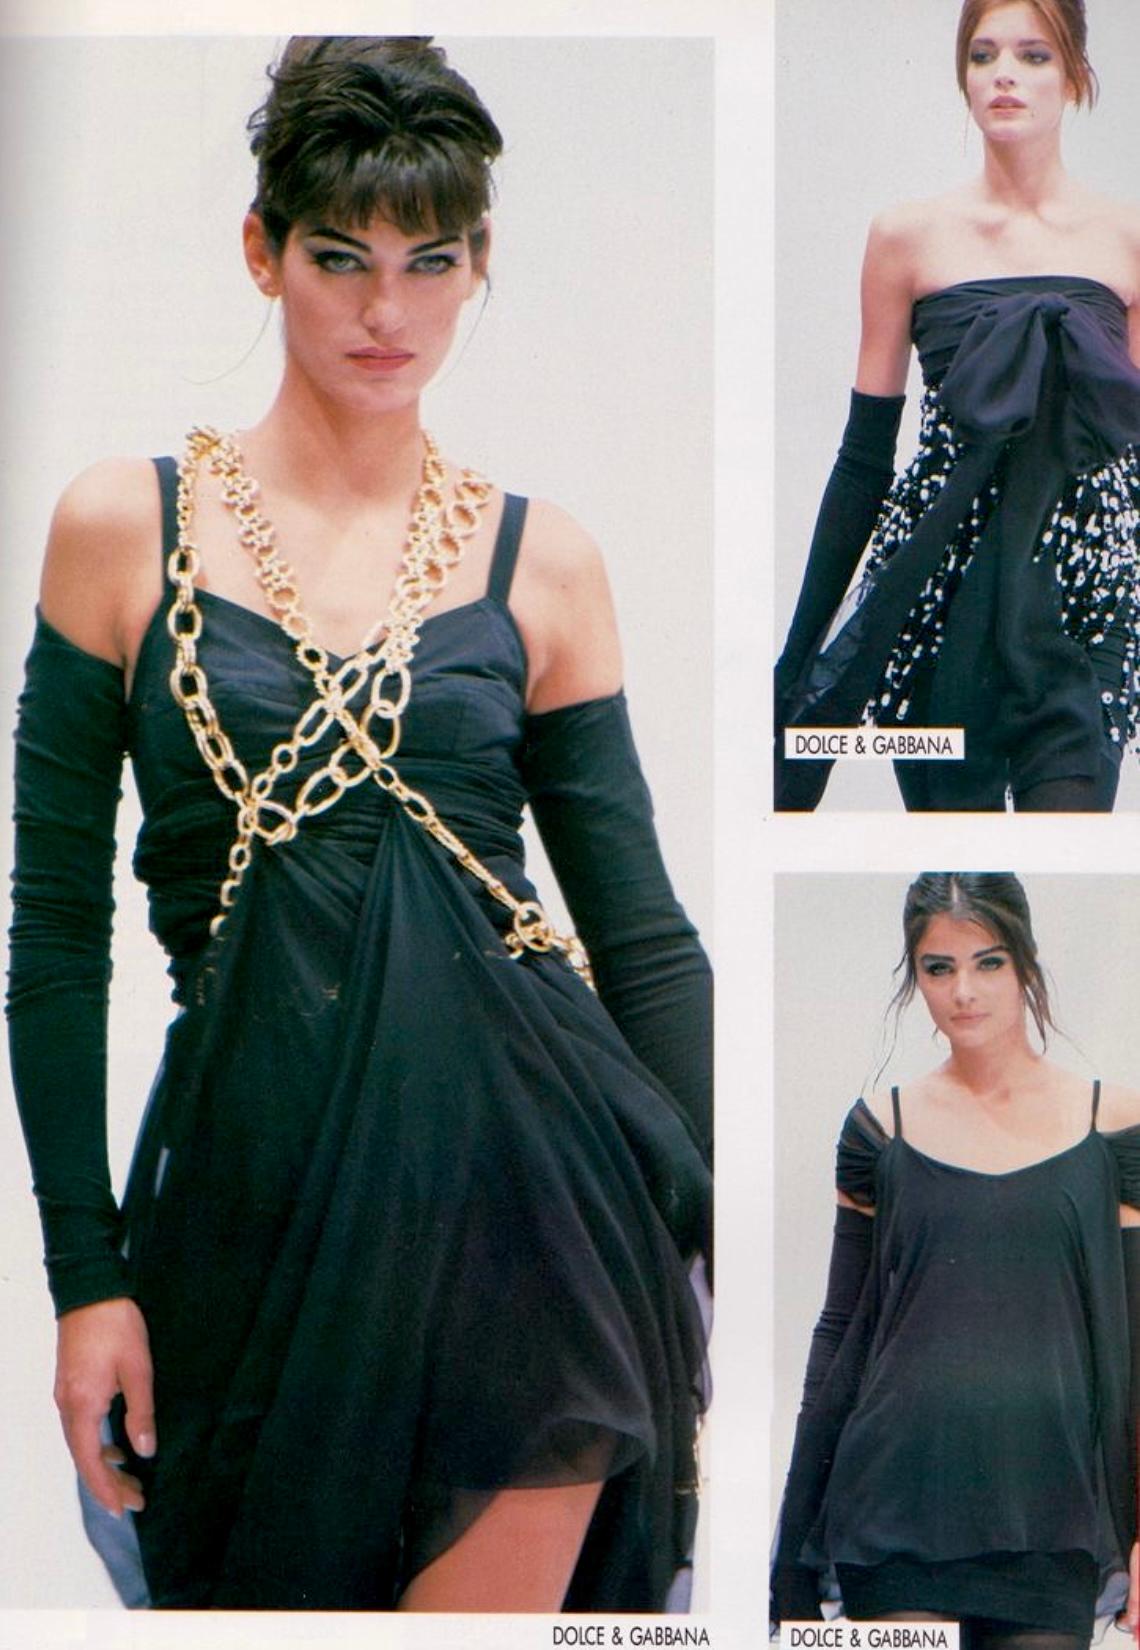 Ich präsentiere ein fabelhaftes schwarzes Bodycon-Minikleid von Dolce & Gabbana. Dieses Kleid aus der Kollektion Frühjahr/Sommer 1991 ist mit goldfarbenen Kettenträgern und einem Rundhalsausschnitt verziert. Ähnliche Kettendetails waren auf dem